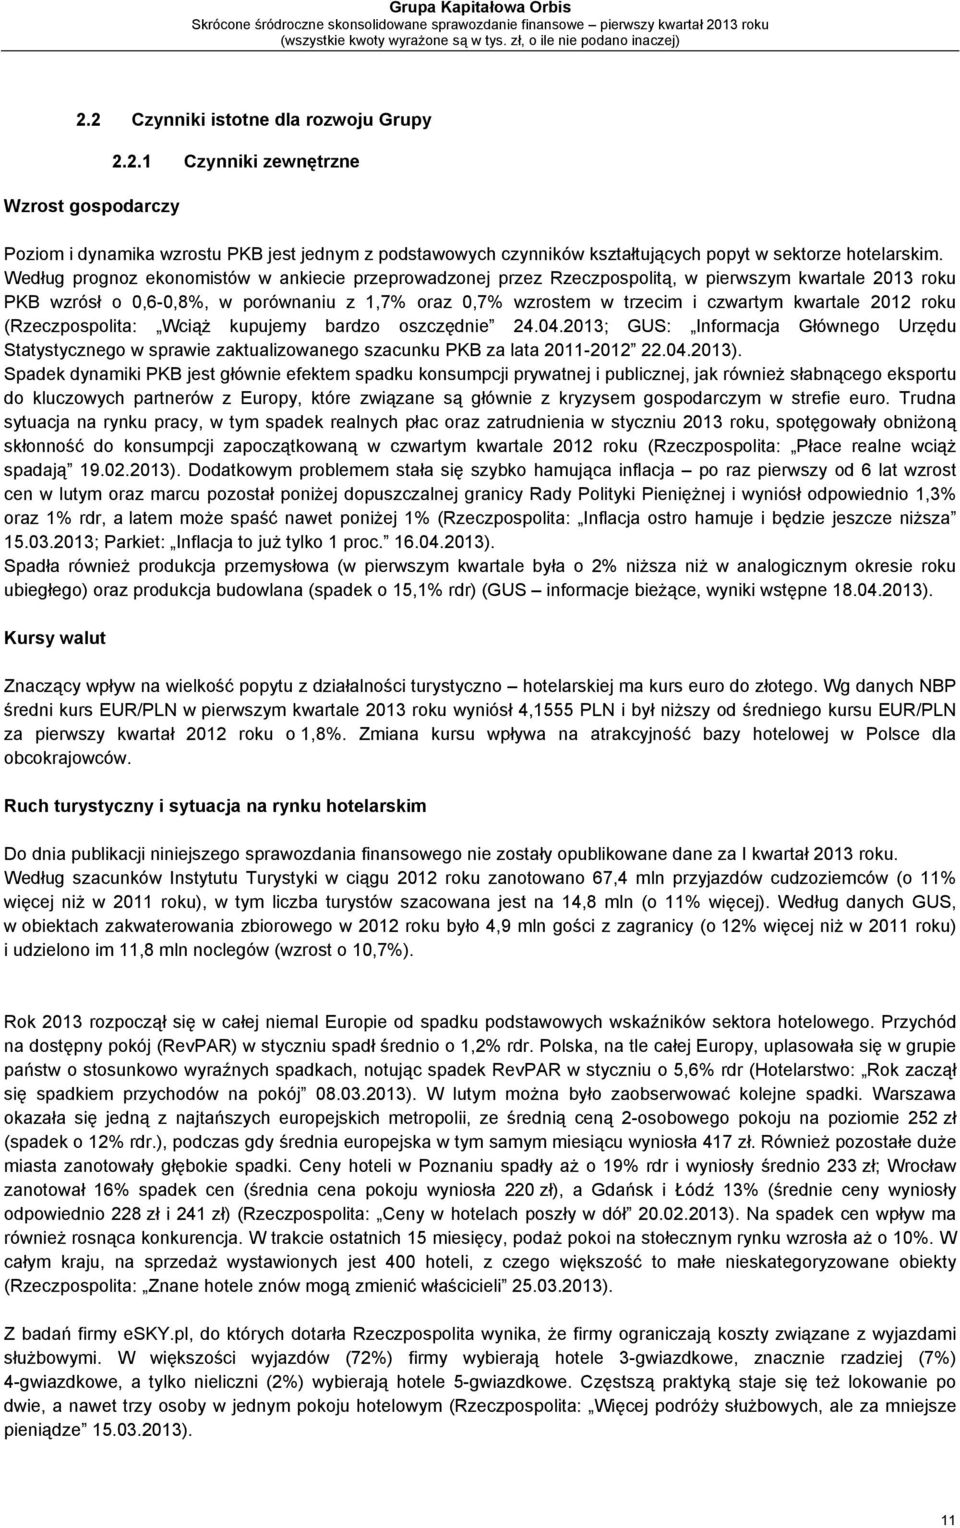 2012 roku (Rzeczpospolita: Wciąż kupujemy bardzo oszczędnie 24.04.2013; GUS: Informacja Głównego Urzędu Statystycznego w sprawie zaktualizowanego szacunku PKB za lata 2011-2012 22.04.2013).